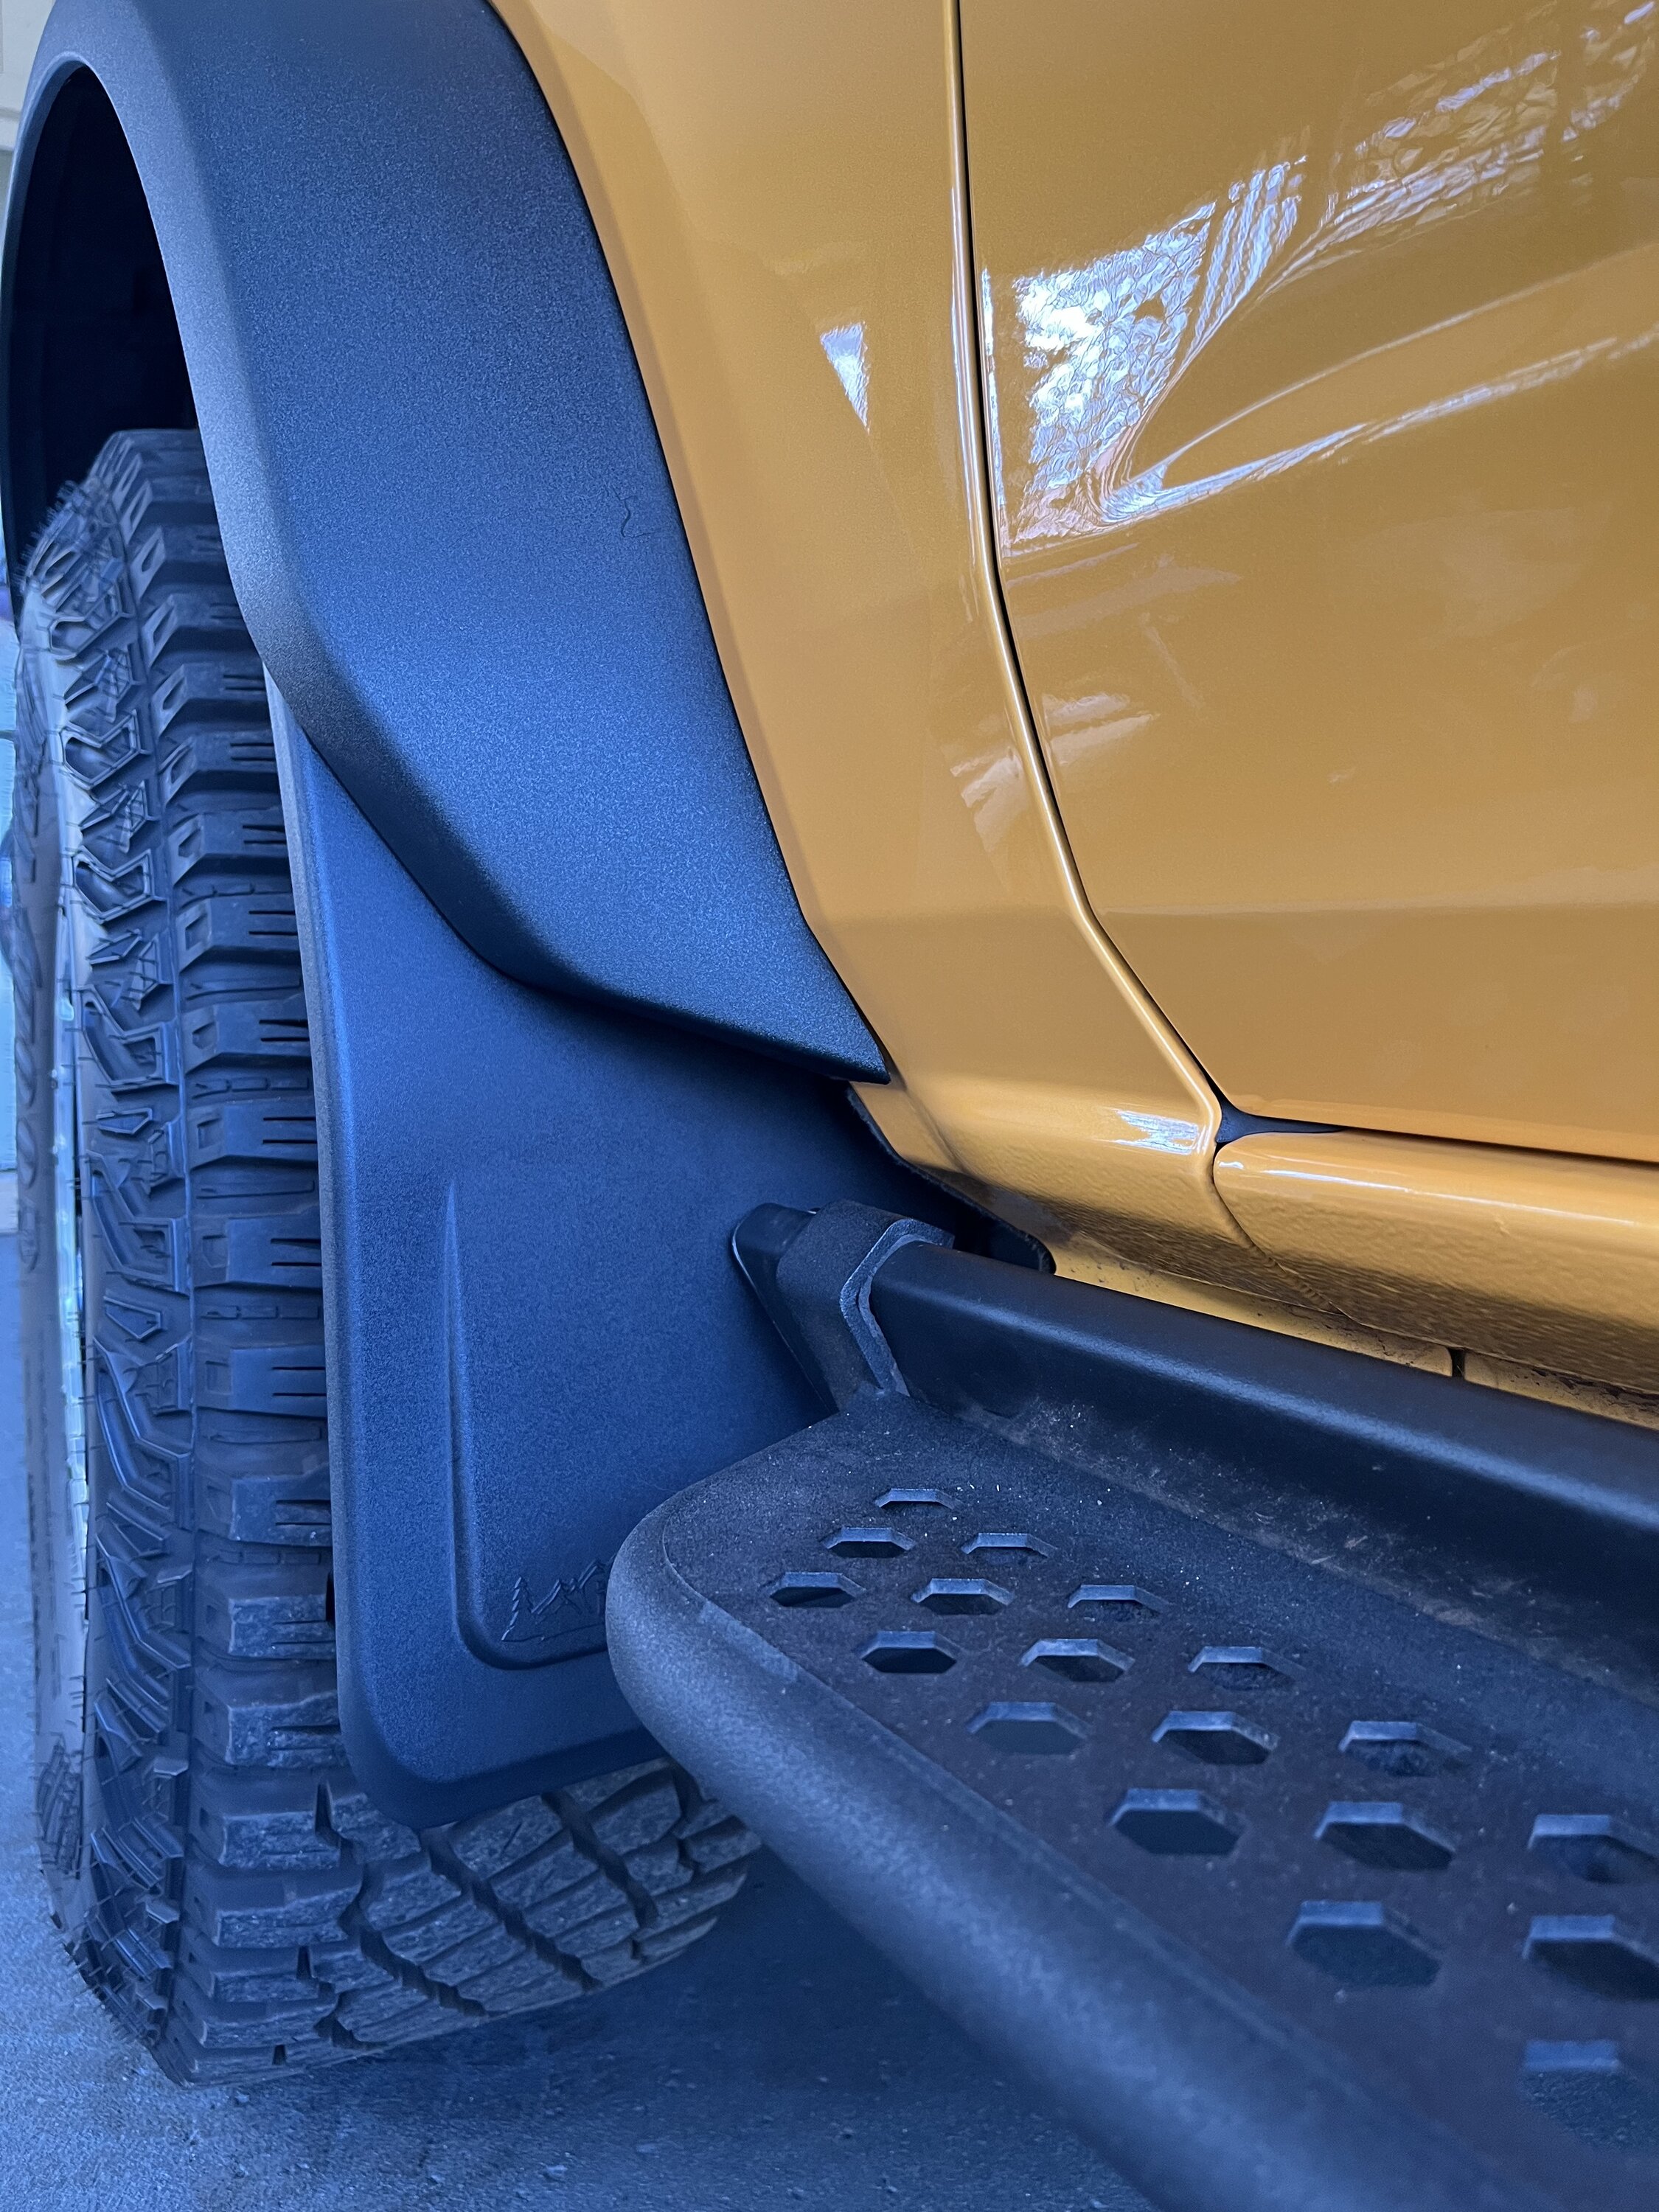 Ford Bronco IAG Mini Mud Flaps Review BE260558-DB9D-4AE2-B58E-34E0CAD03F77